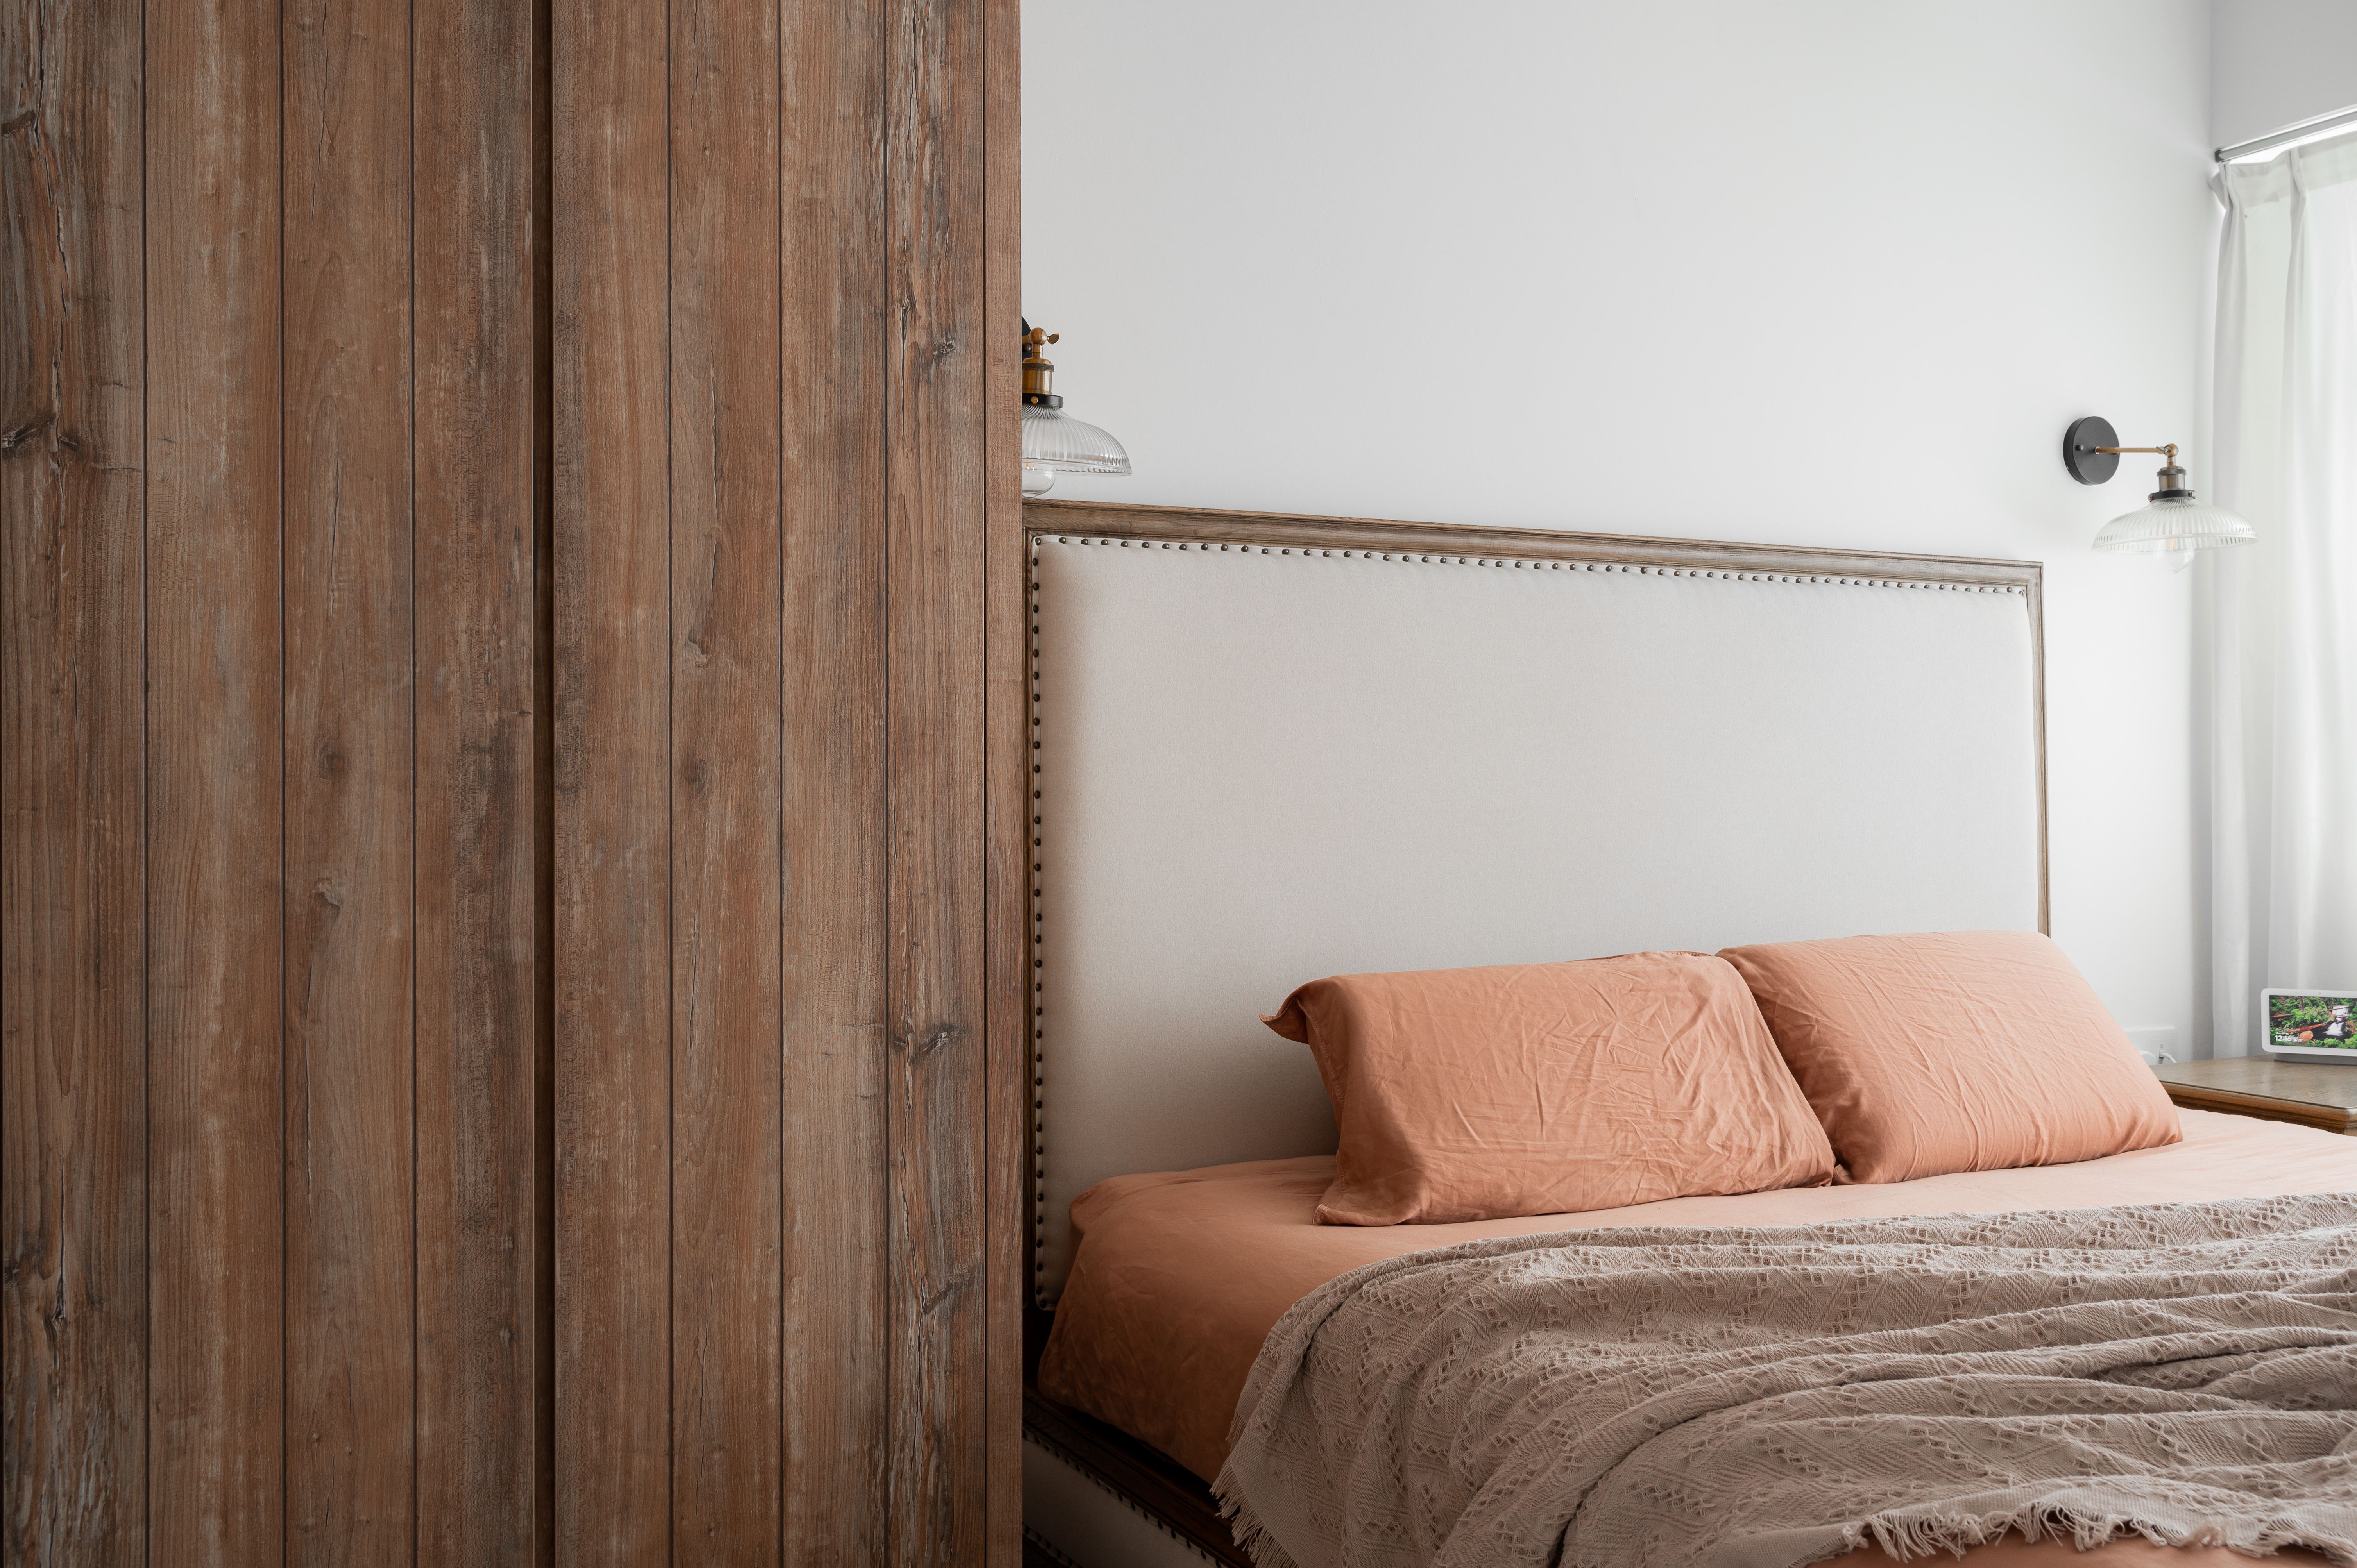 Modern Rustic Bedroom with Wooden Walls, Cozy Bed, White Closet Door, and Wooden Floor.